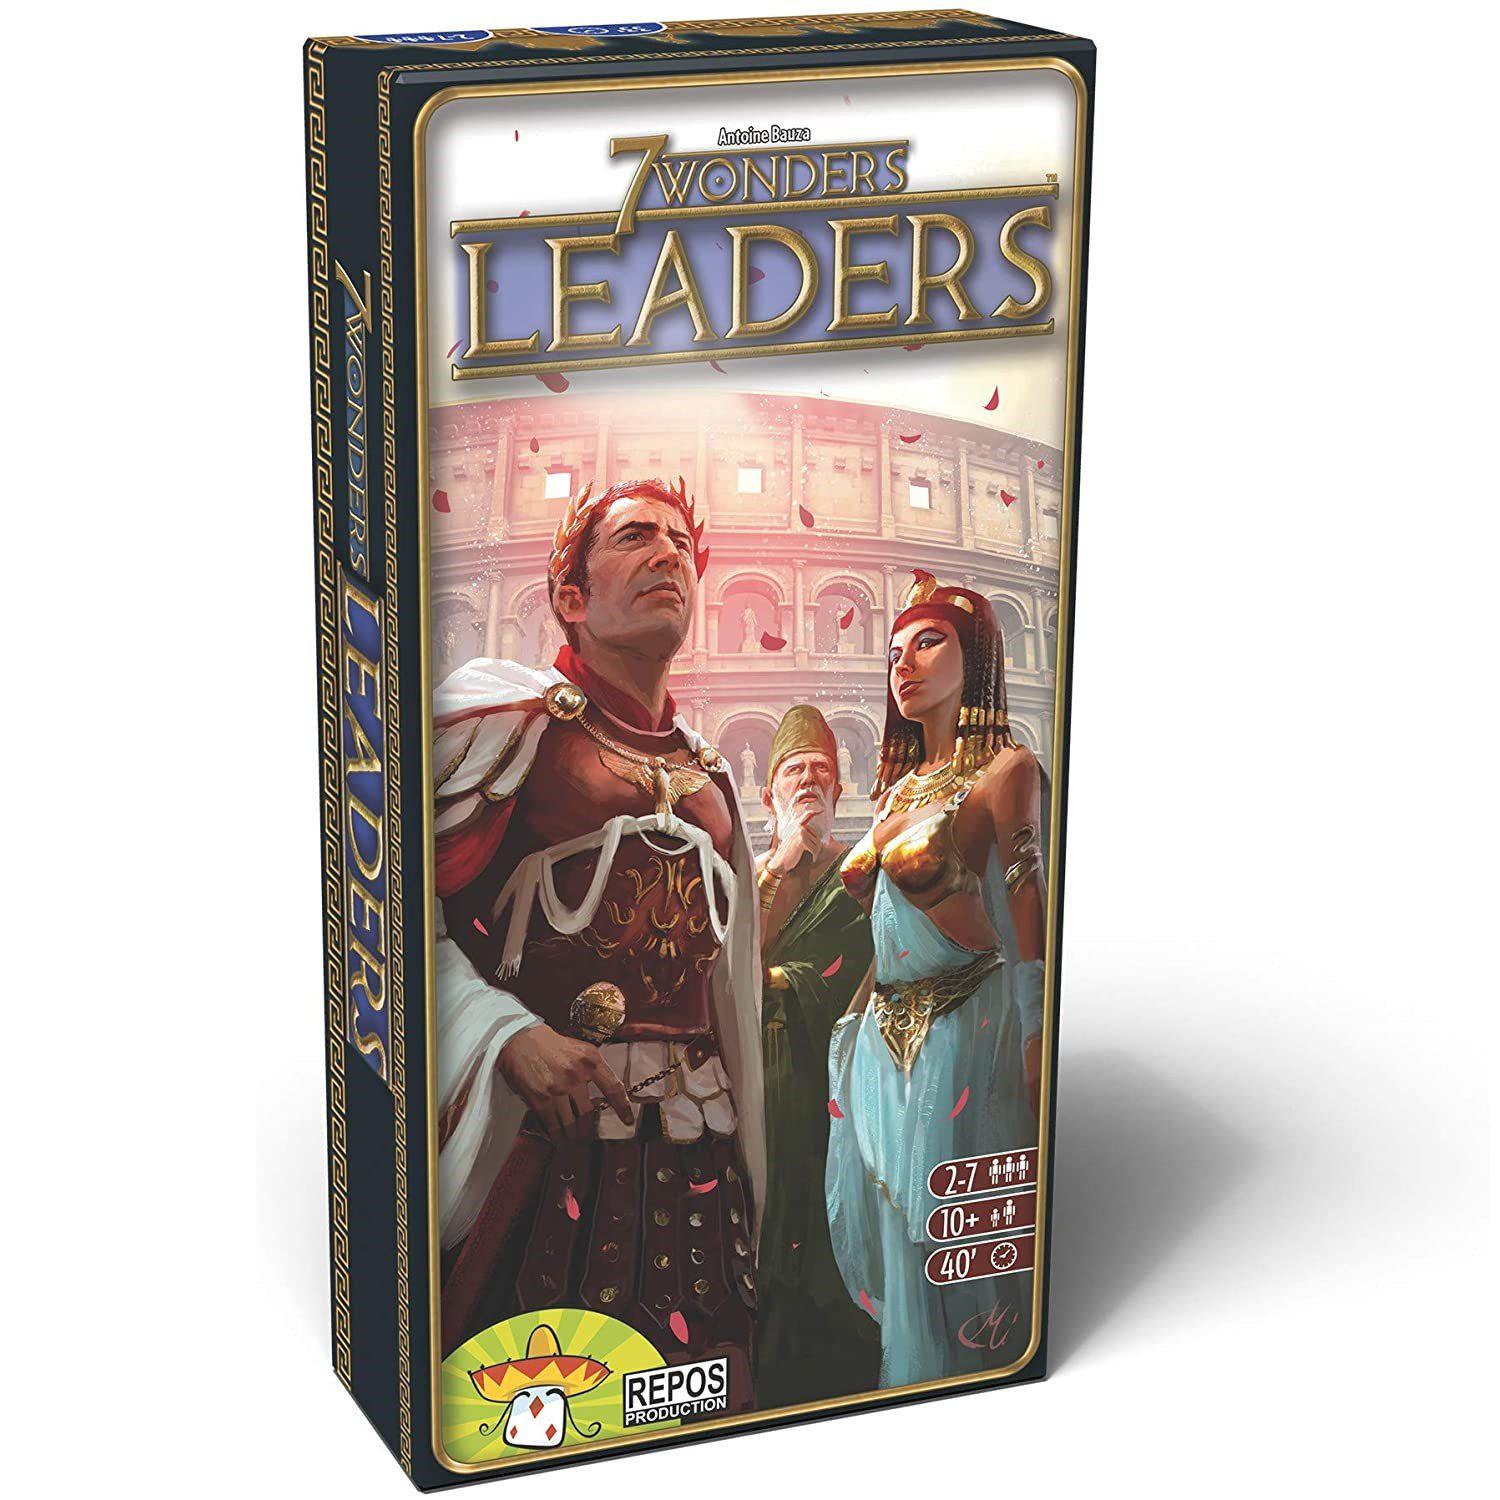 7 Wonders: Leaders - The Sword & Board